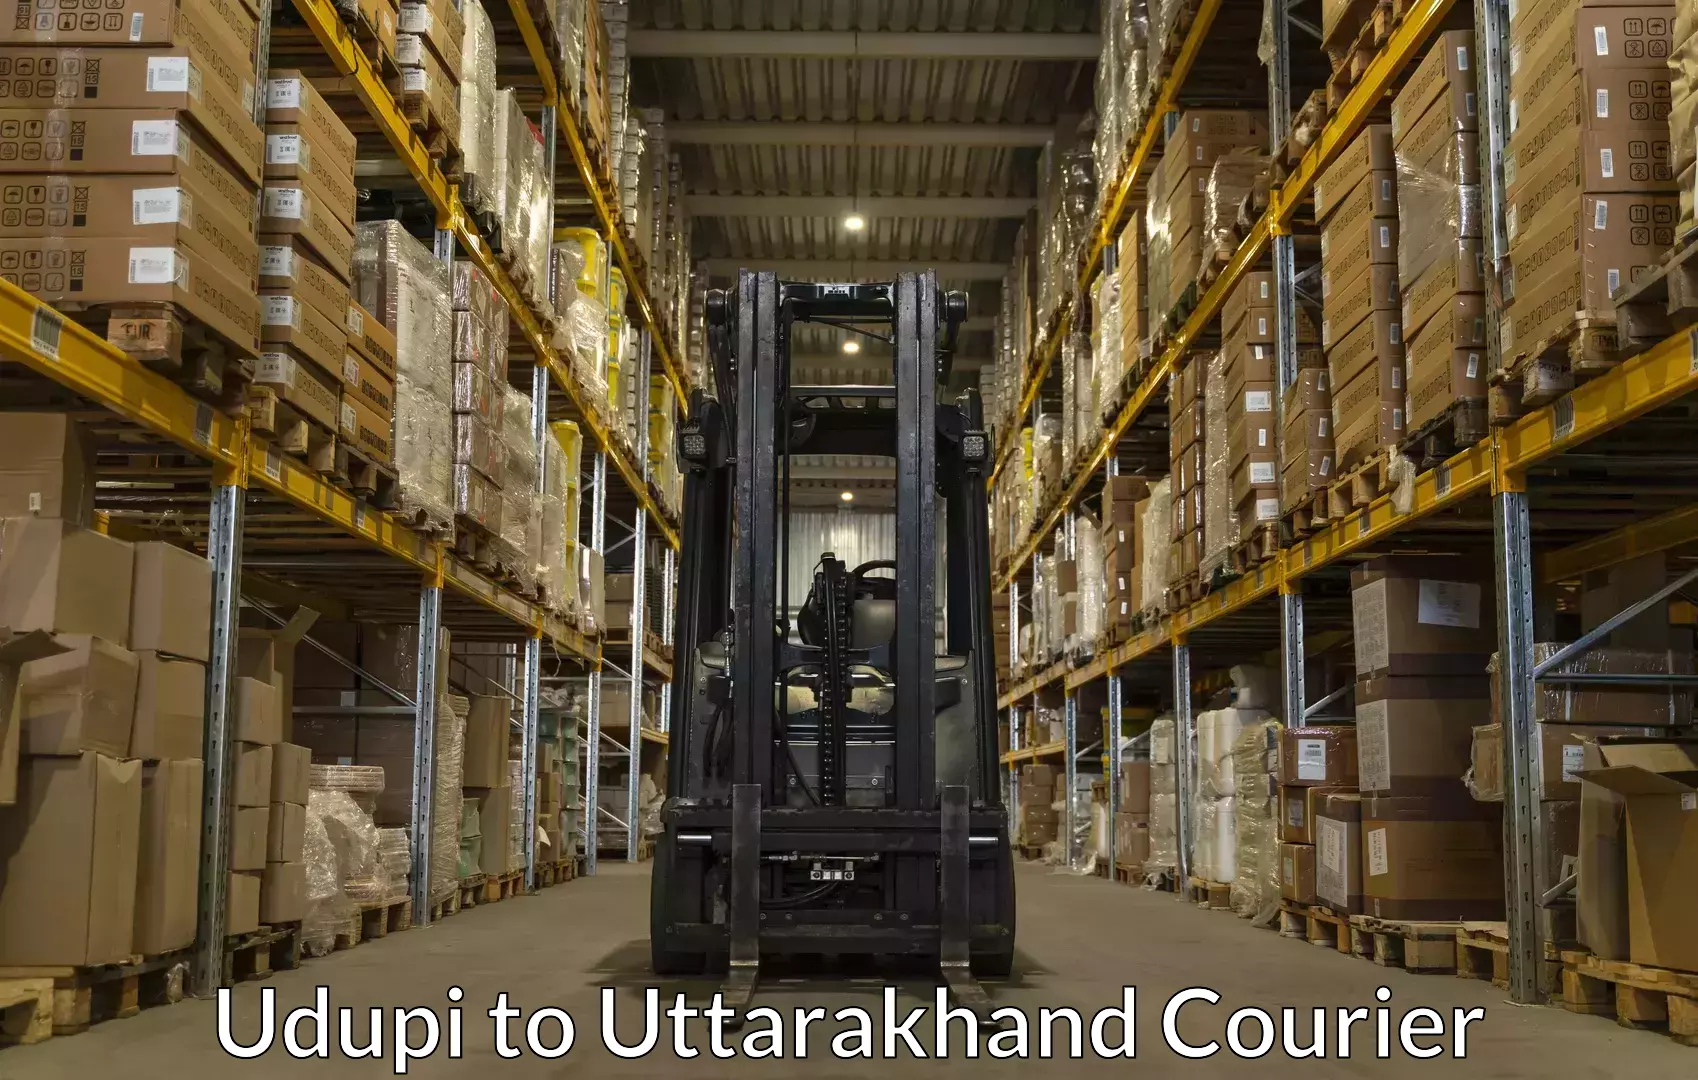 Luggage transport service Udupi to Uttarakhand